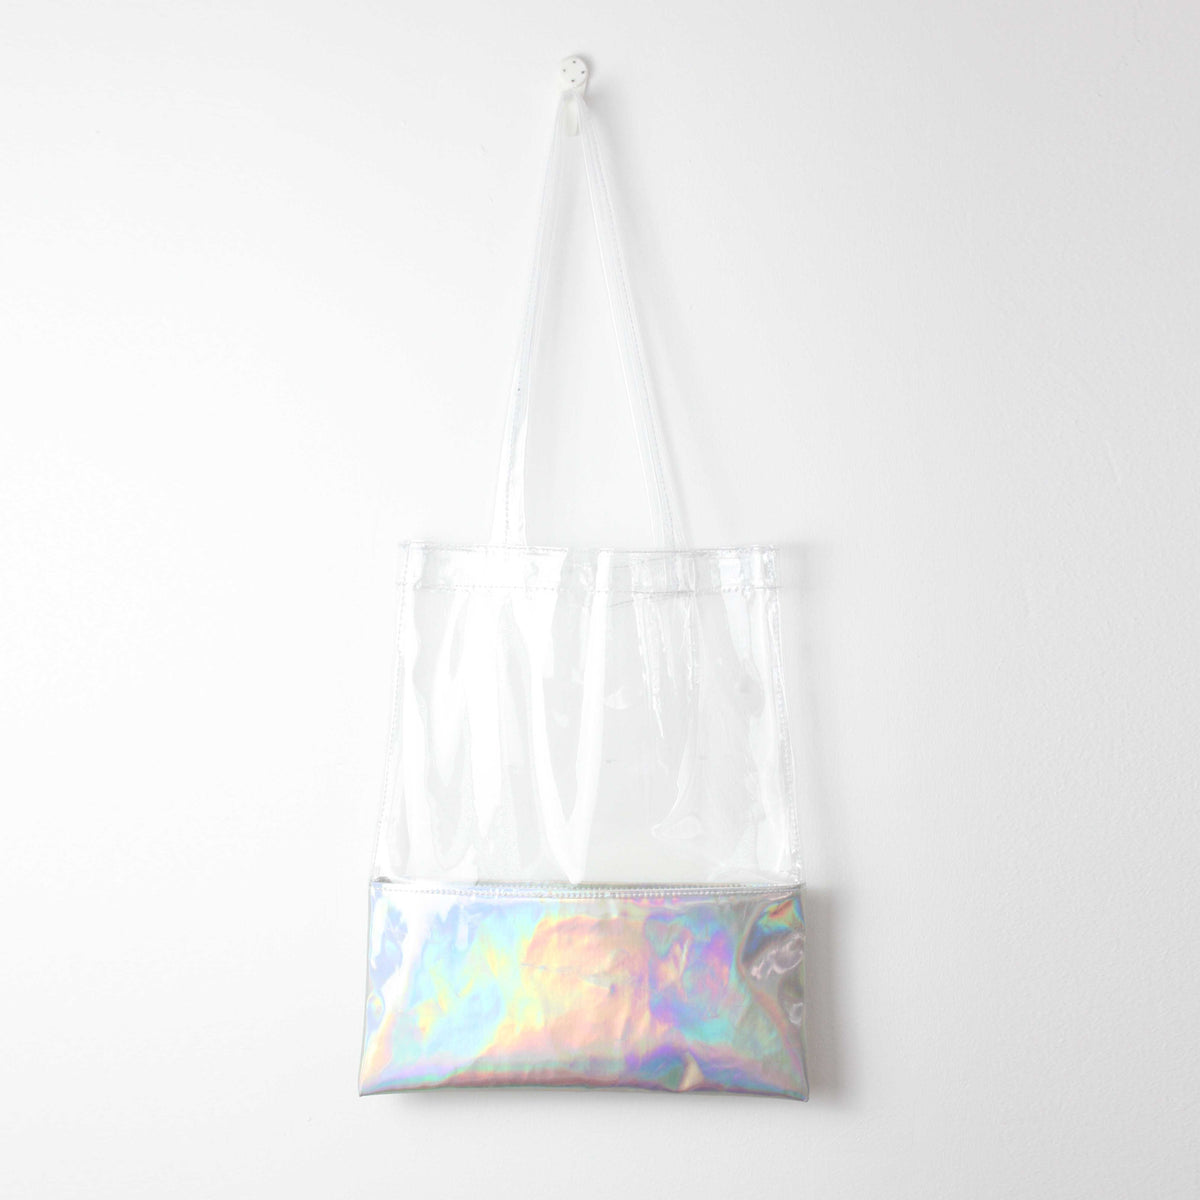 transparent beach bag